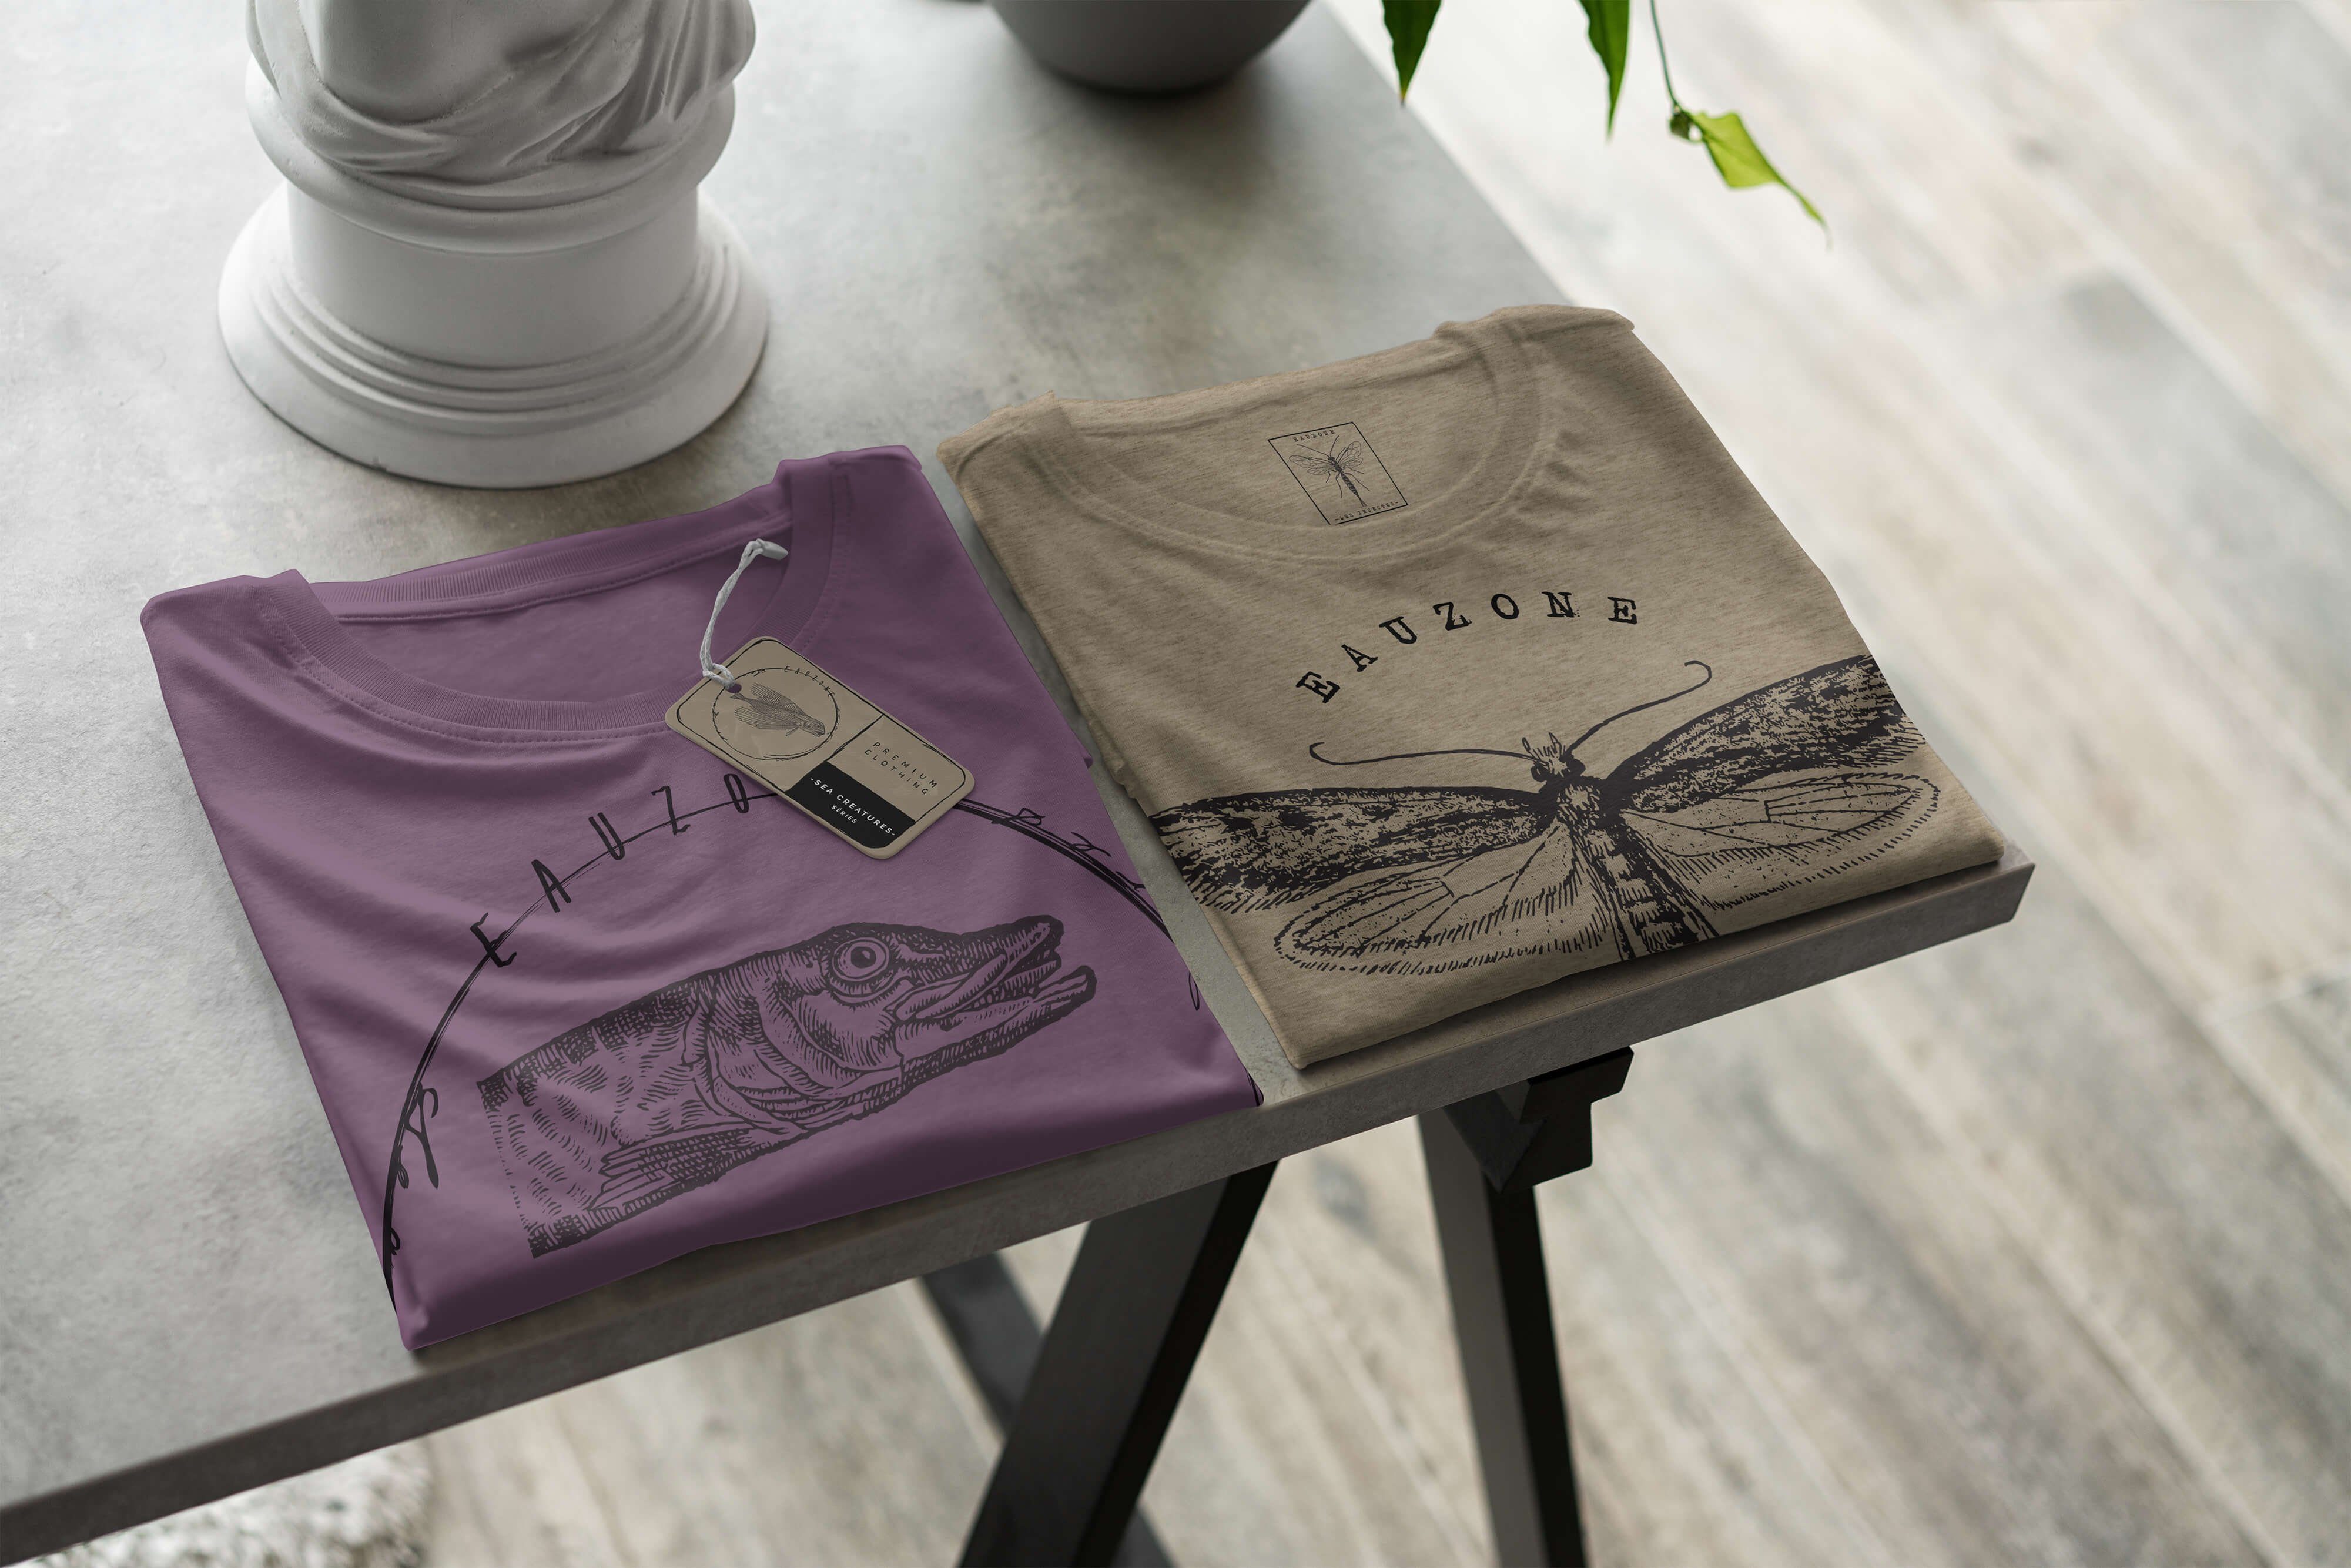 Struktur sportlicher Sea Sinus Sea 086 und Serie: feine Art - Shiraz Creatures, T-Shirt Schnitt / T-Shirt Fische Tiefsee